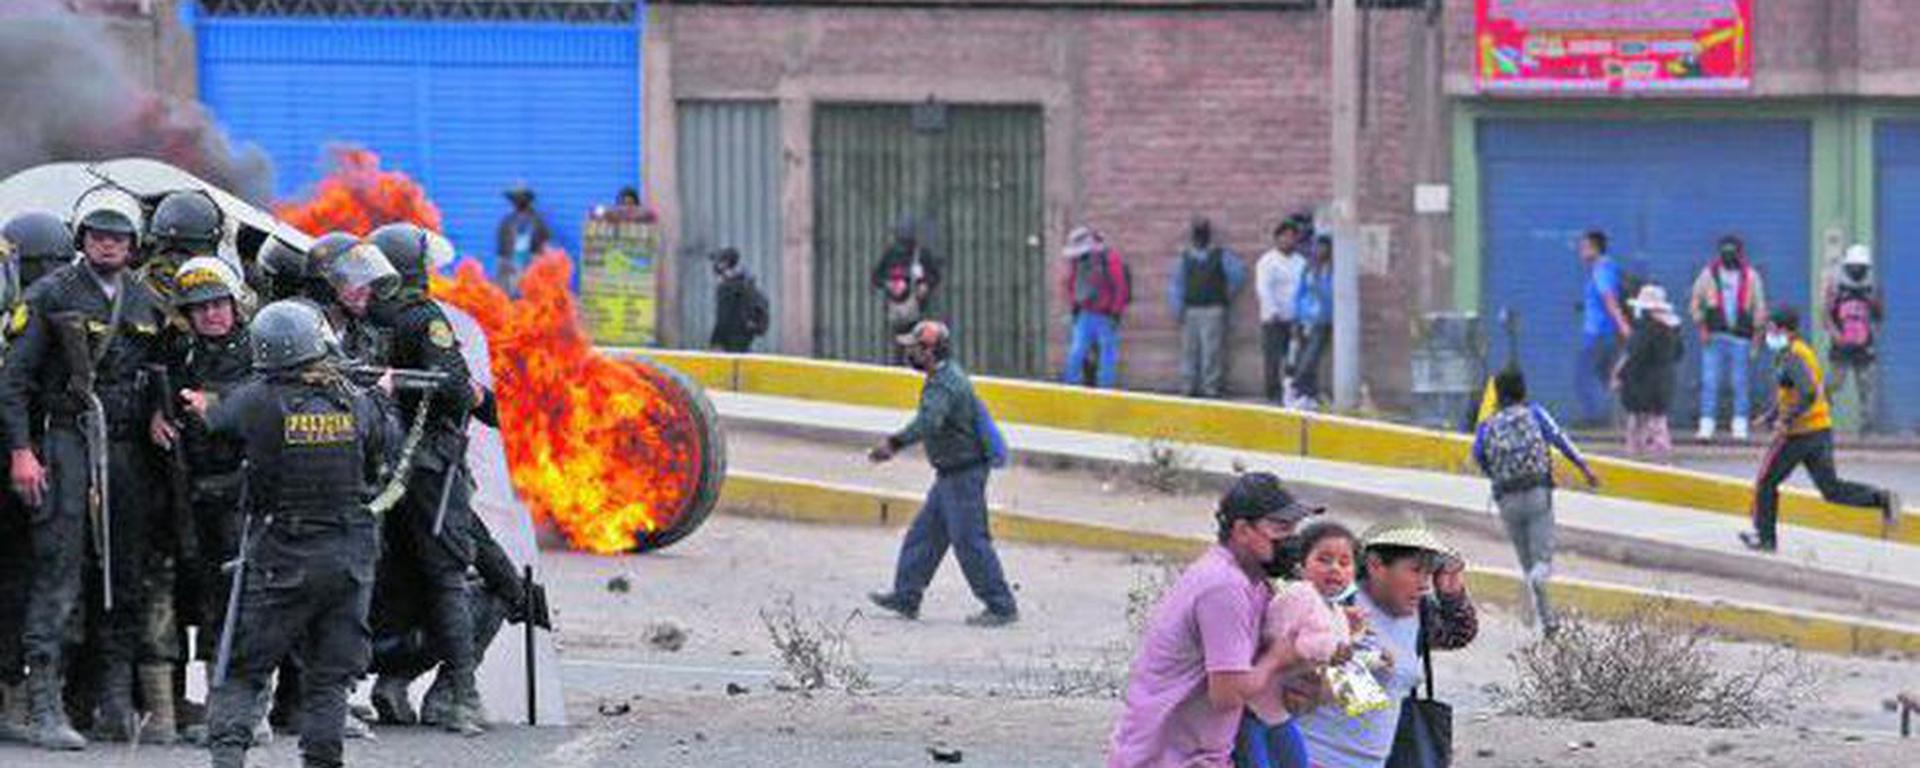 Turismo en Puno: ¿Cómo está siendo afectada la región del sur ante violentas protestas? | ECONOMIA | EL COMERCIO PERÚ